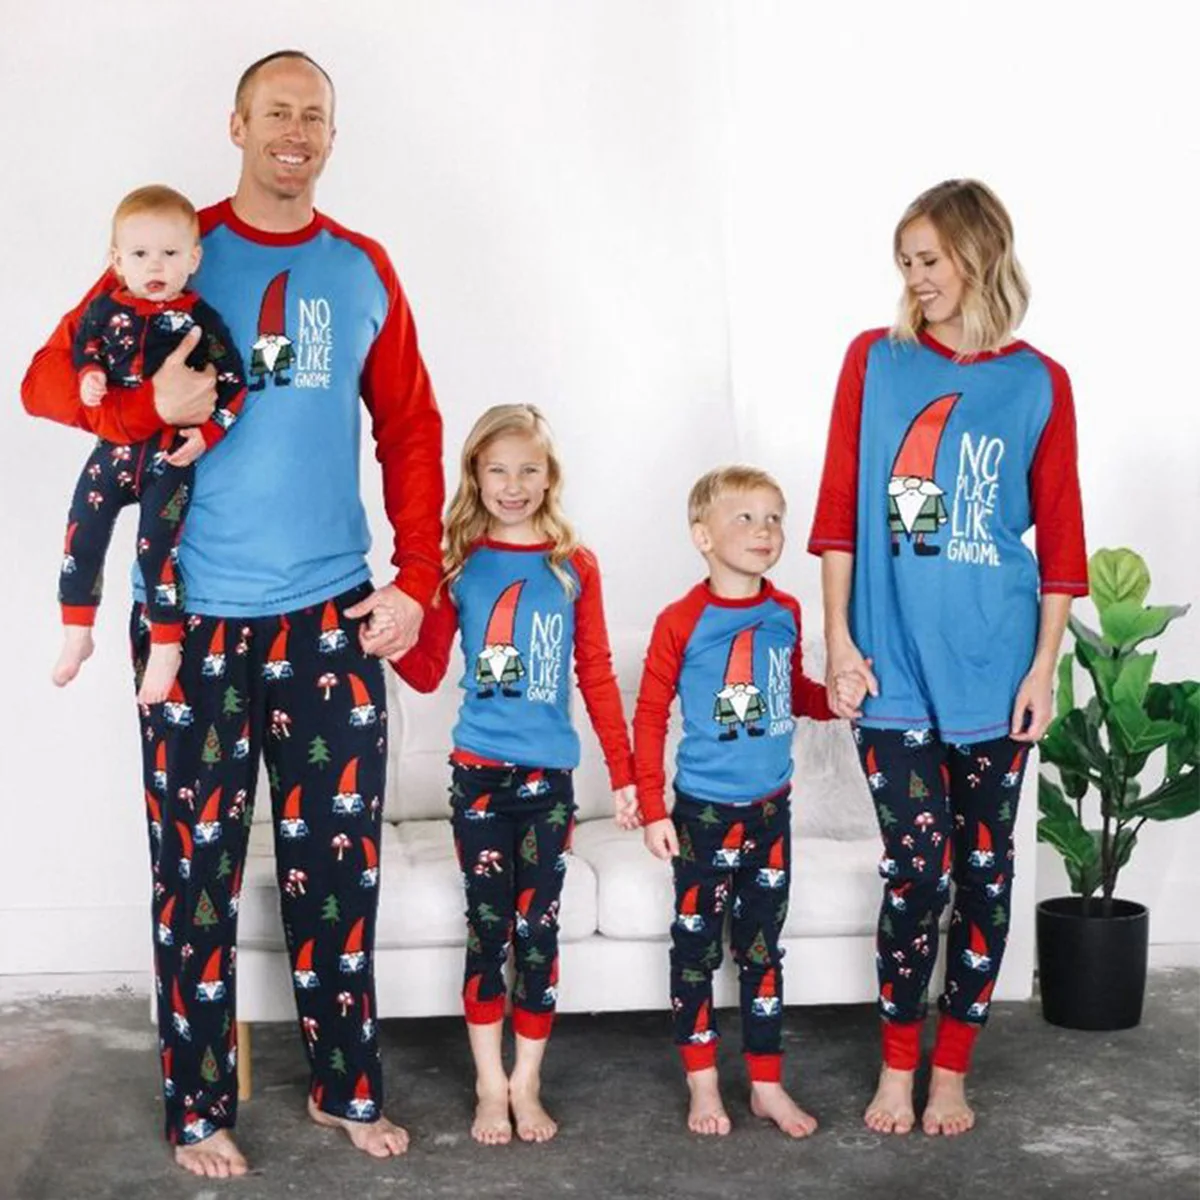 Теплые рождественские пижамные комплекты одинаковые пижамы для всей семьи, мамы, папы, детей, шляпа для животных, необычные рождественские домашние наборы с длинными рукавами, синего, красного цветов, Санта-Клауса